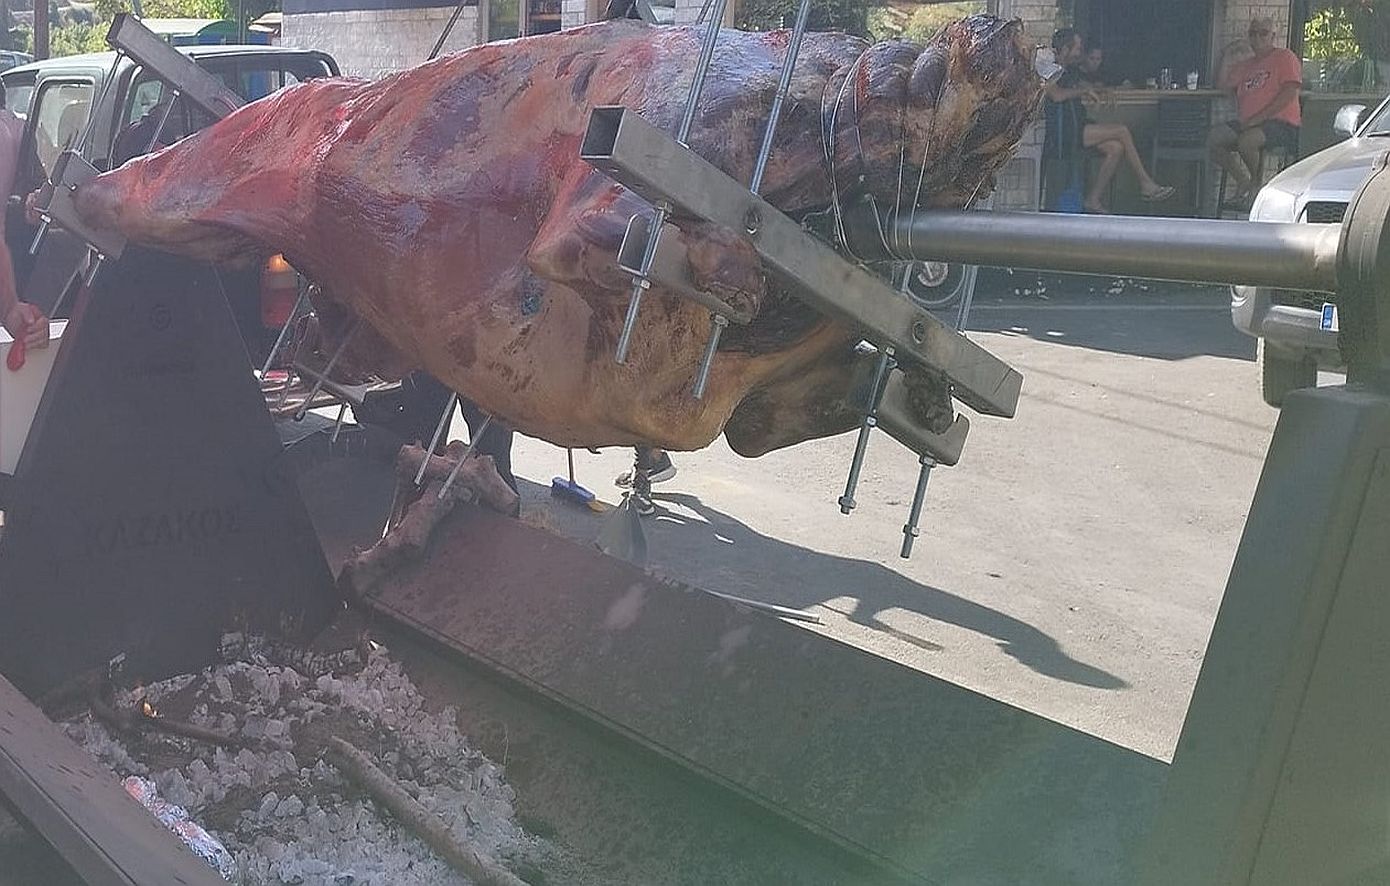 Χανιά: Το σούβλισμα ταύρου στο χωριό της Κισσάμου για την εορτή του Αγίου Πνεύματος προκαλεί αντιδράσεις